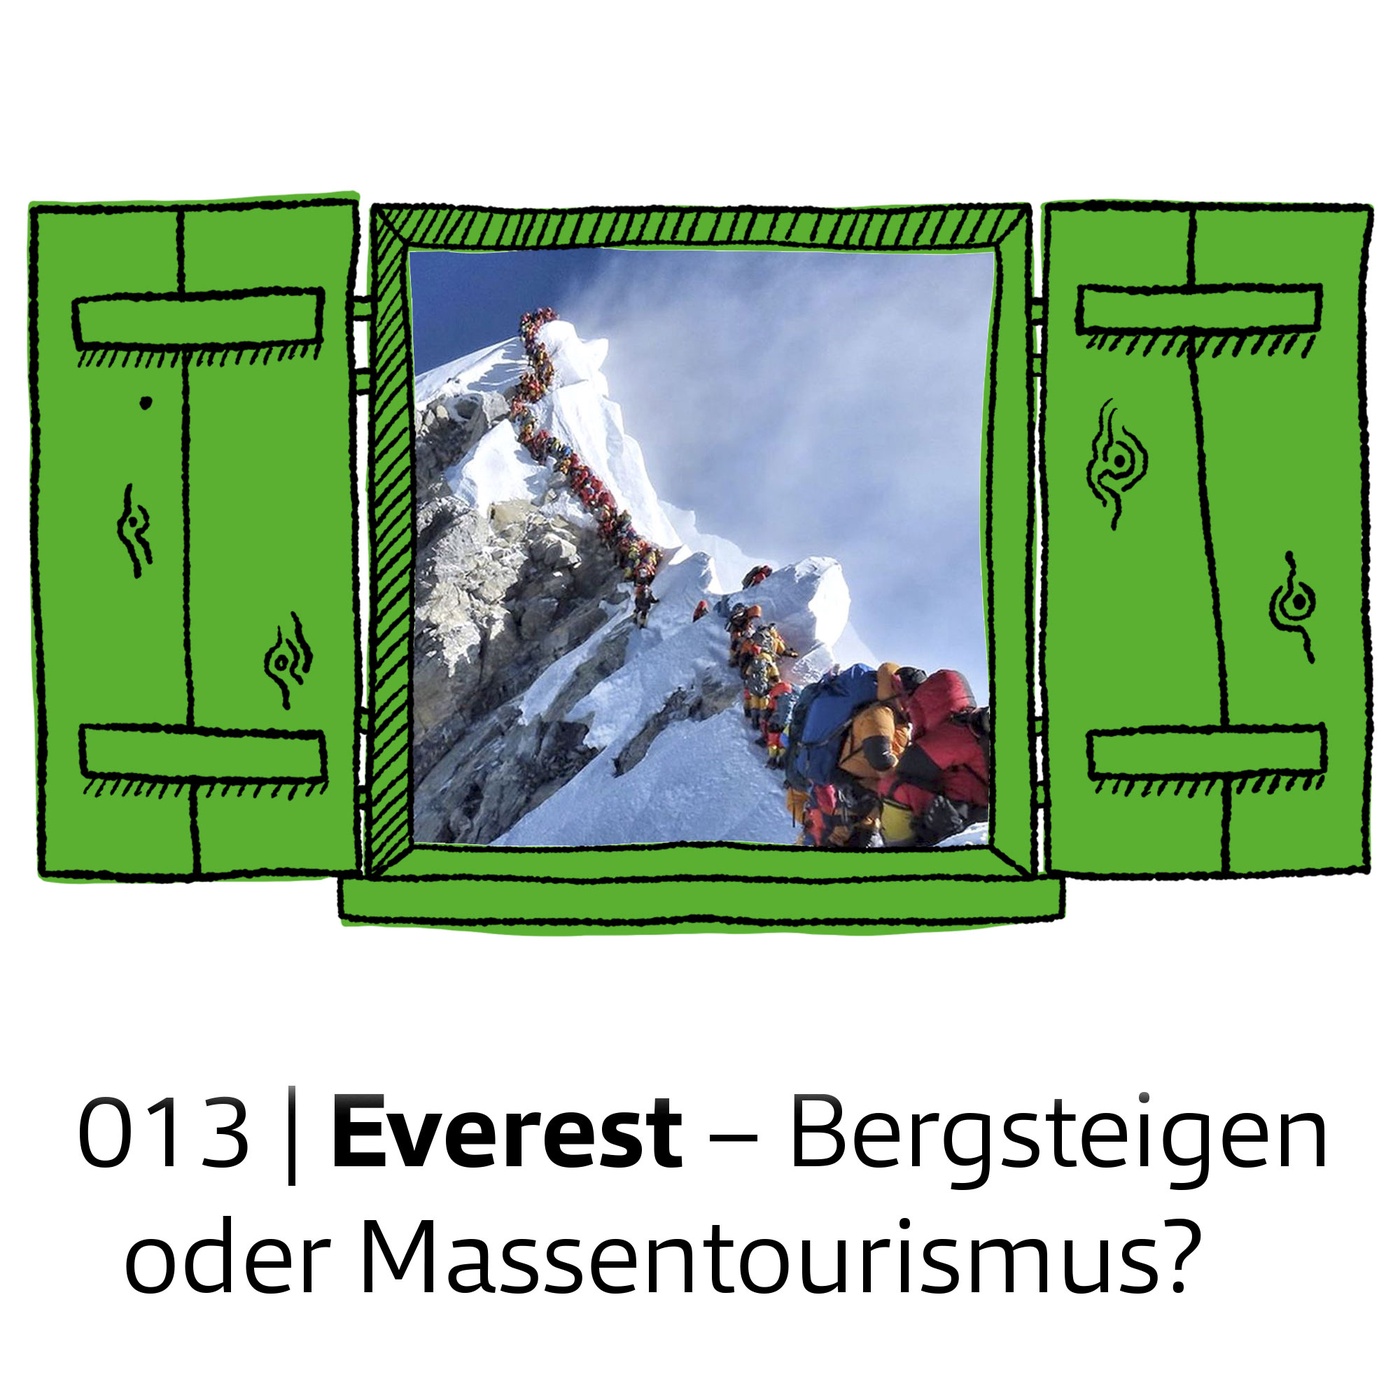 #013 Everest – Bergsteigen oder Massentourismus?